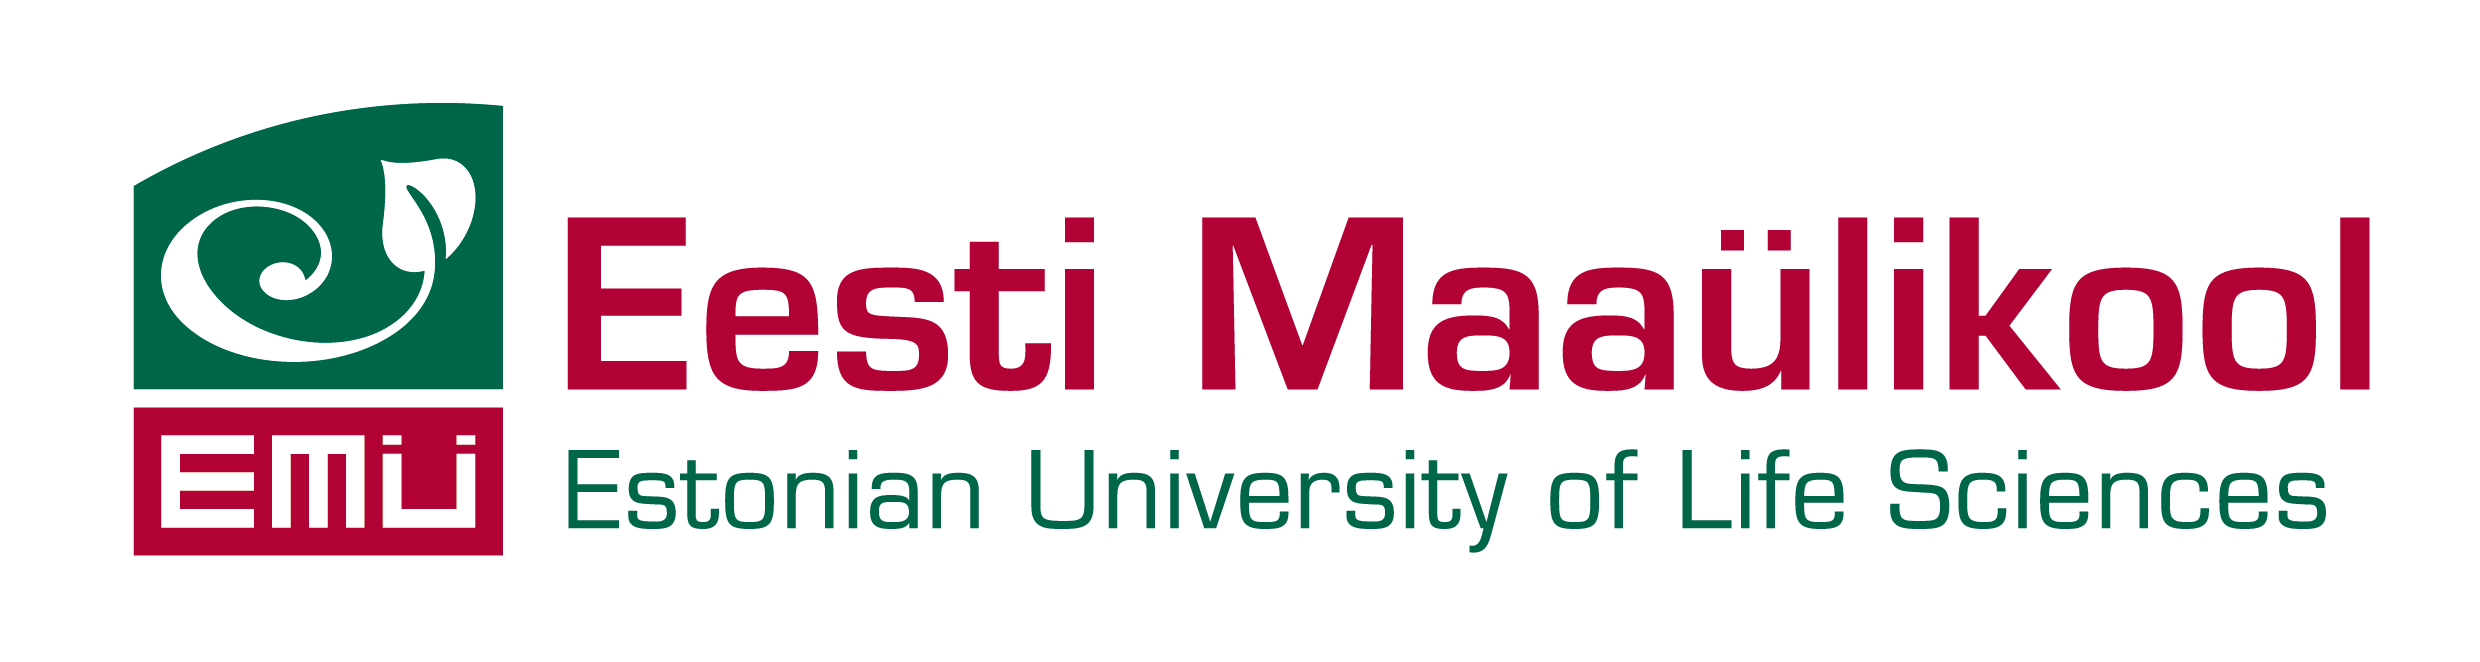 Eesti Maaülikooli logo